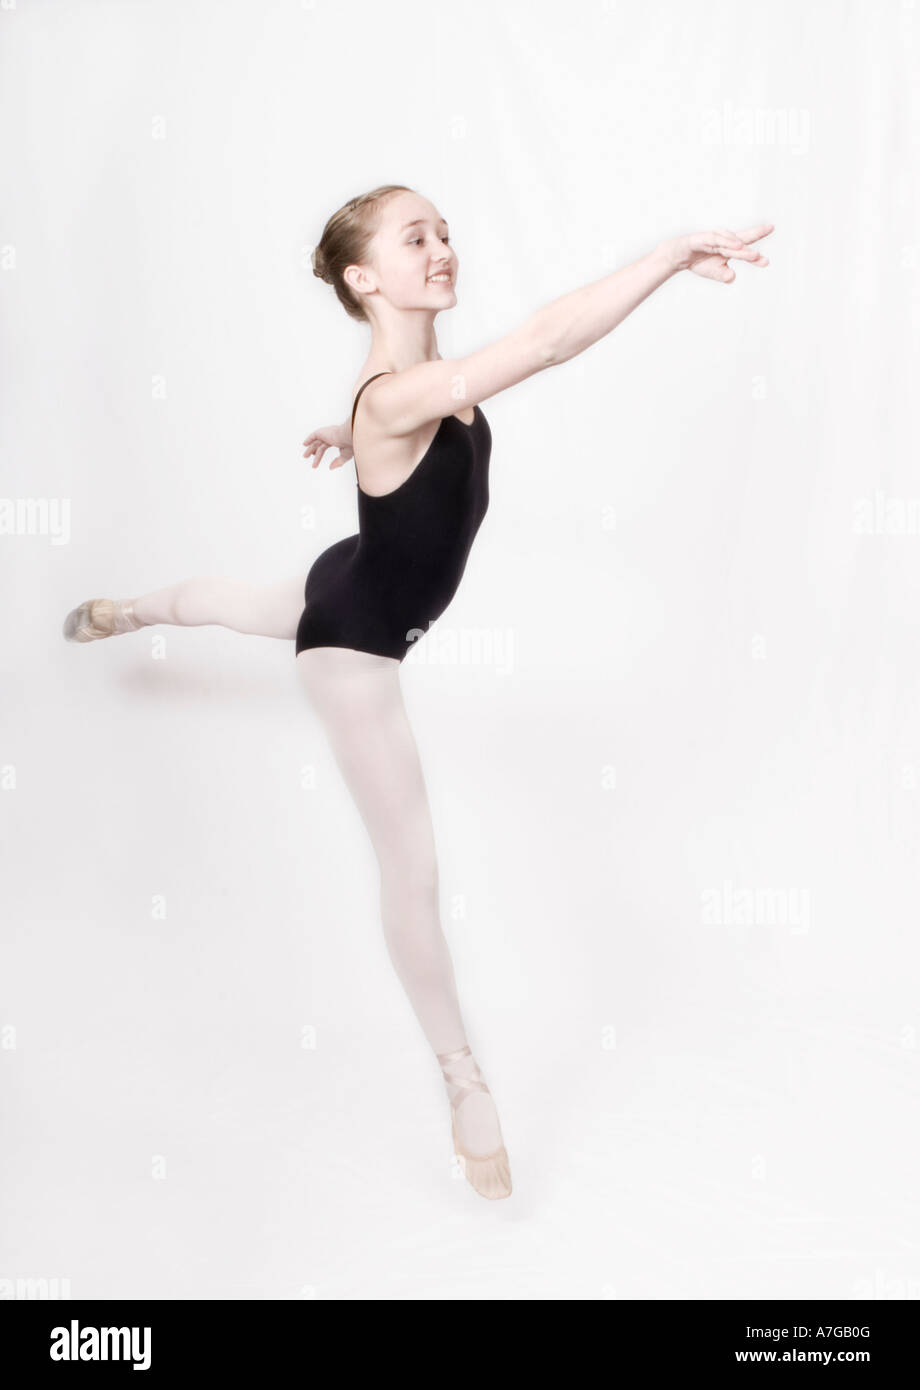 13-year old ballerina Stock Photo